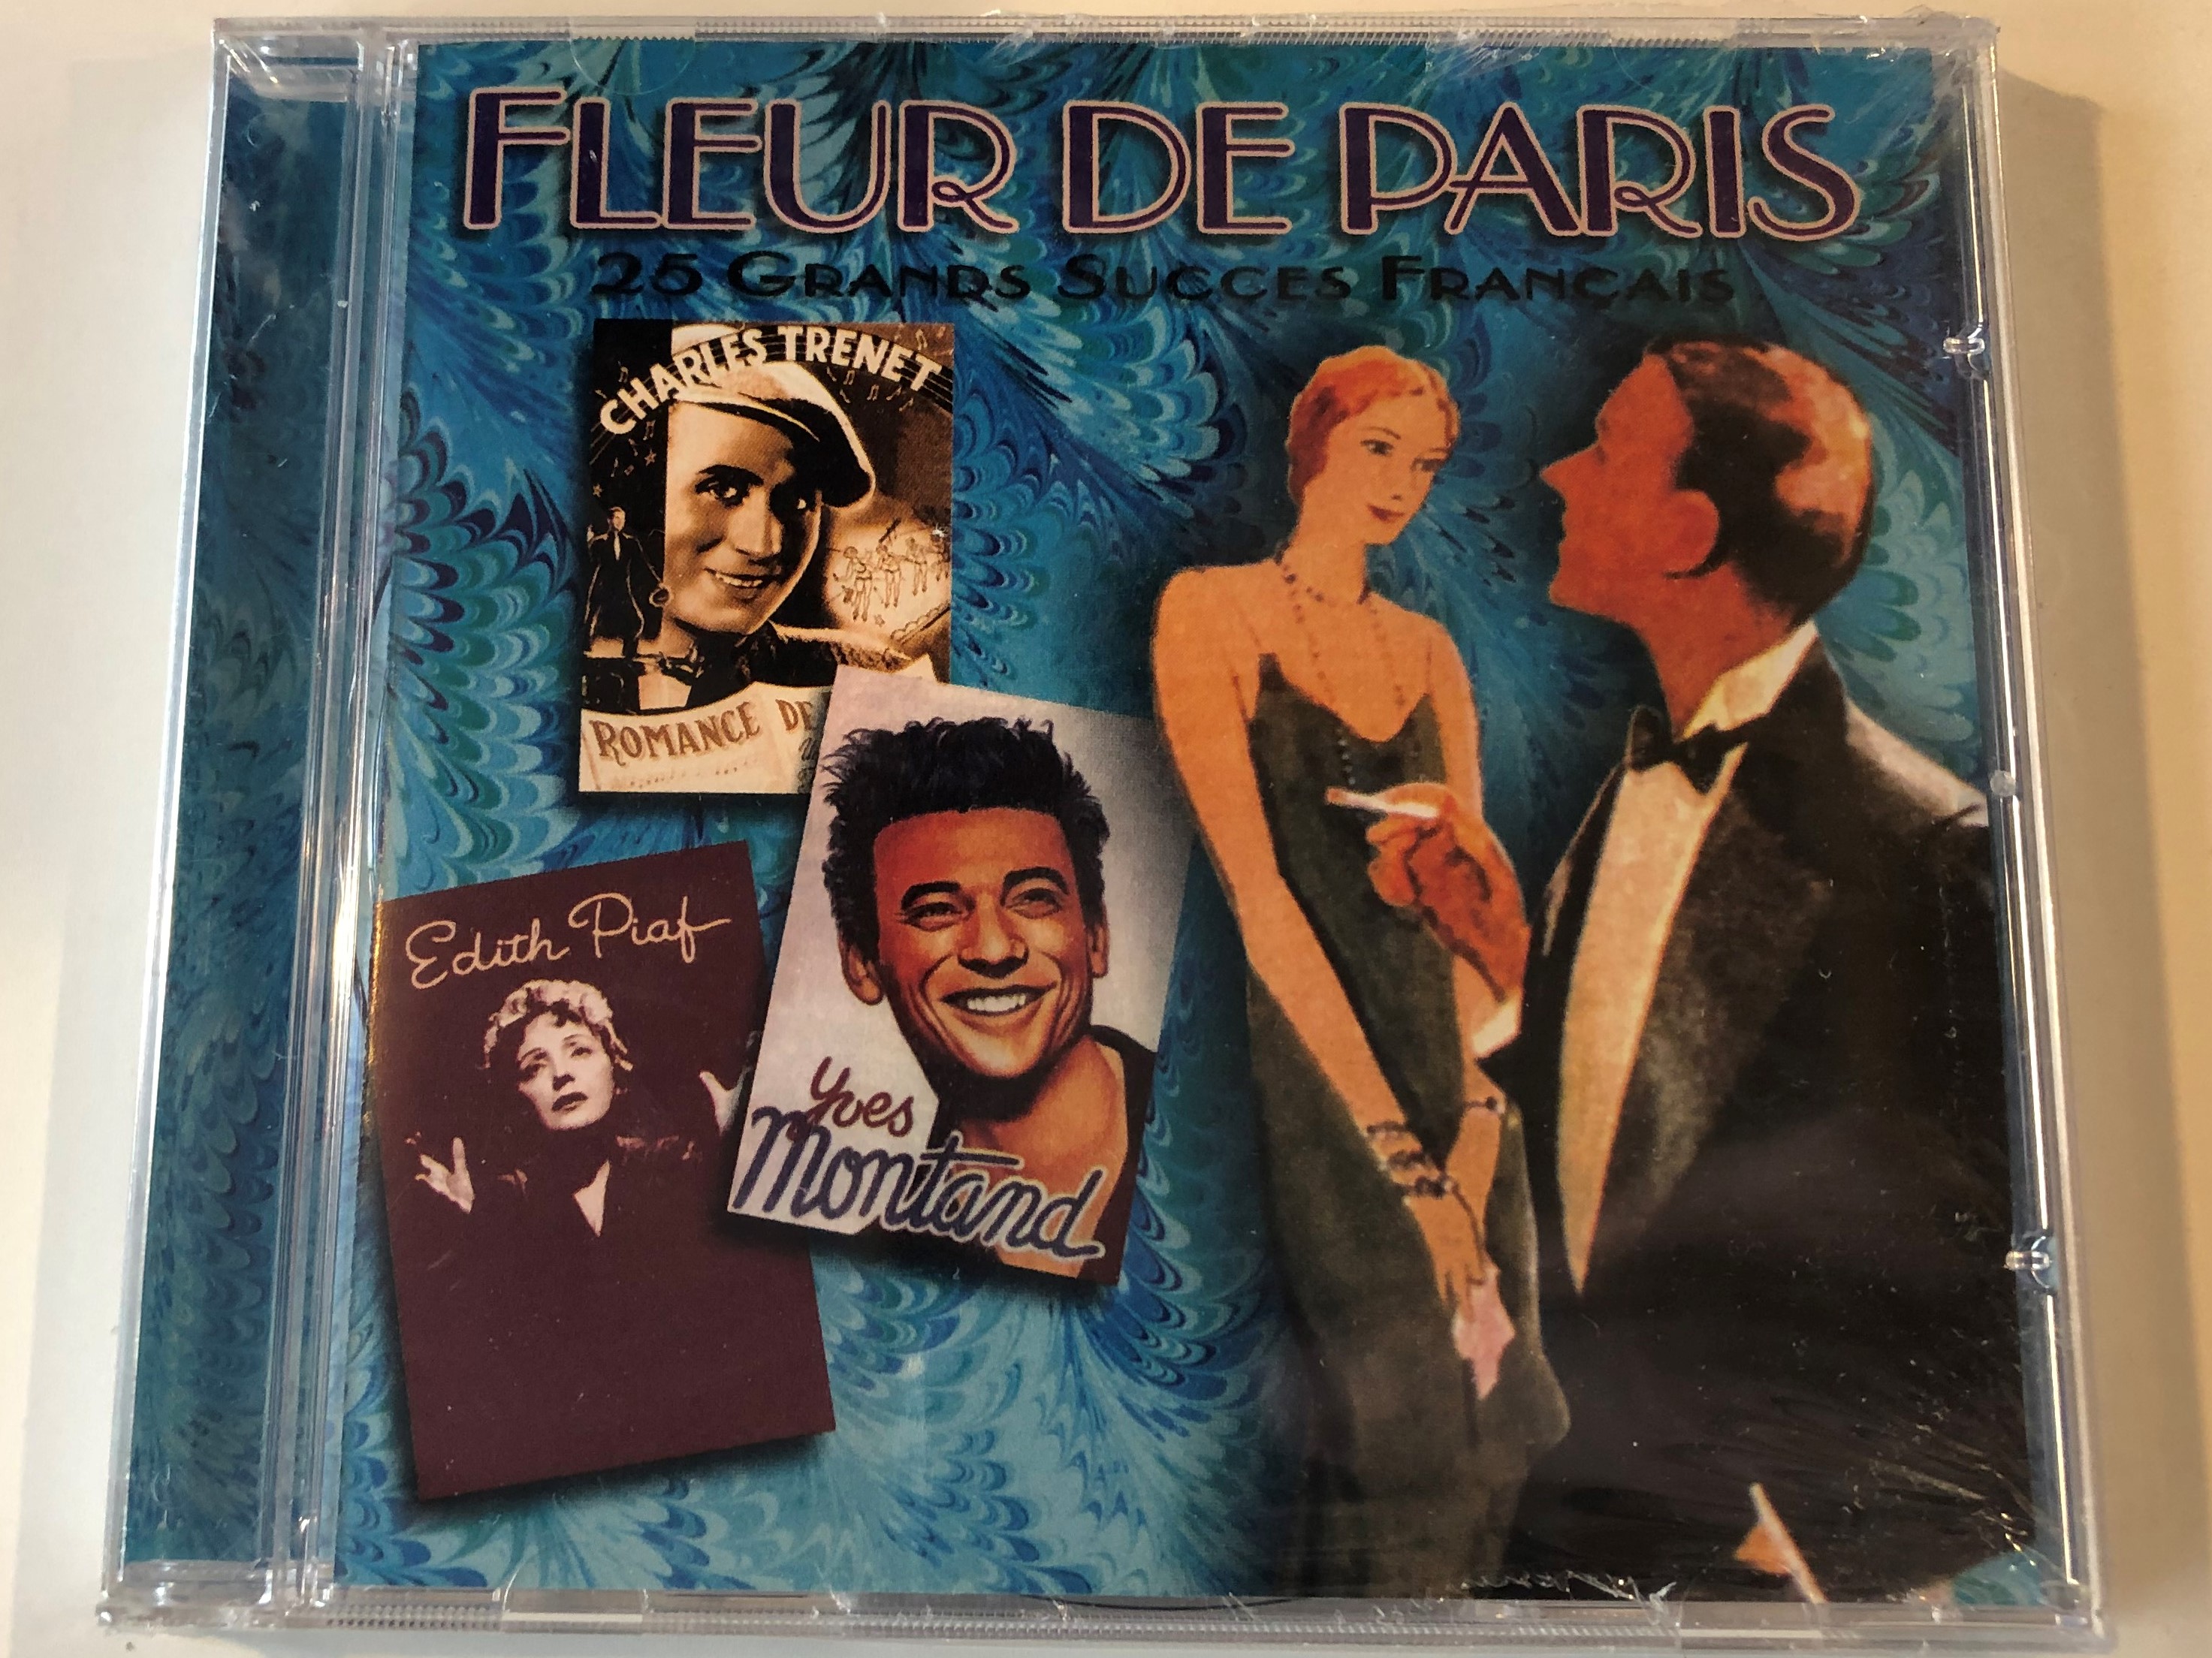 fleur-de-paris-25-grands-succes-francais-prism-leisure-audio-cd-2001-platcd-657-1-.jpg